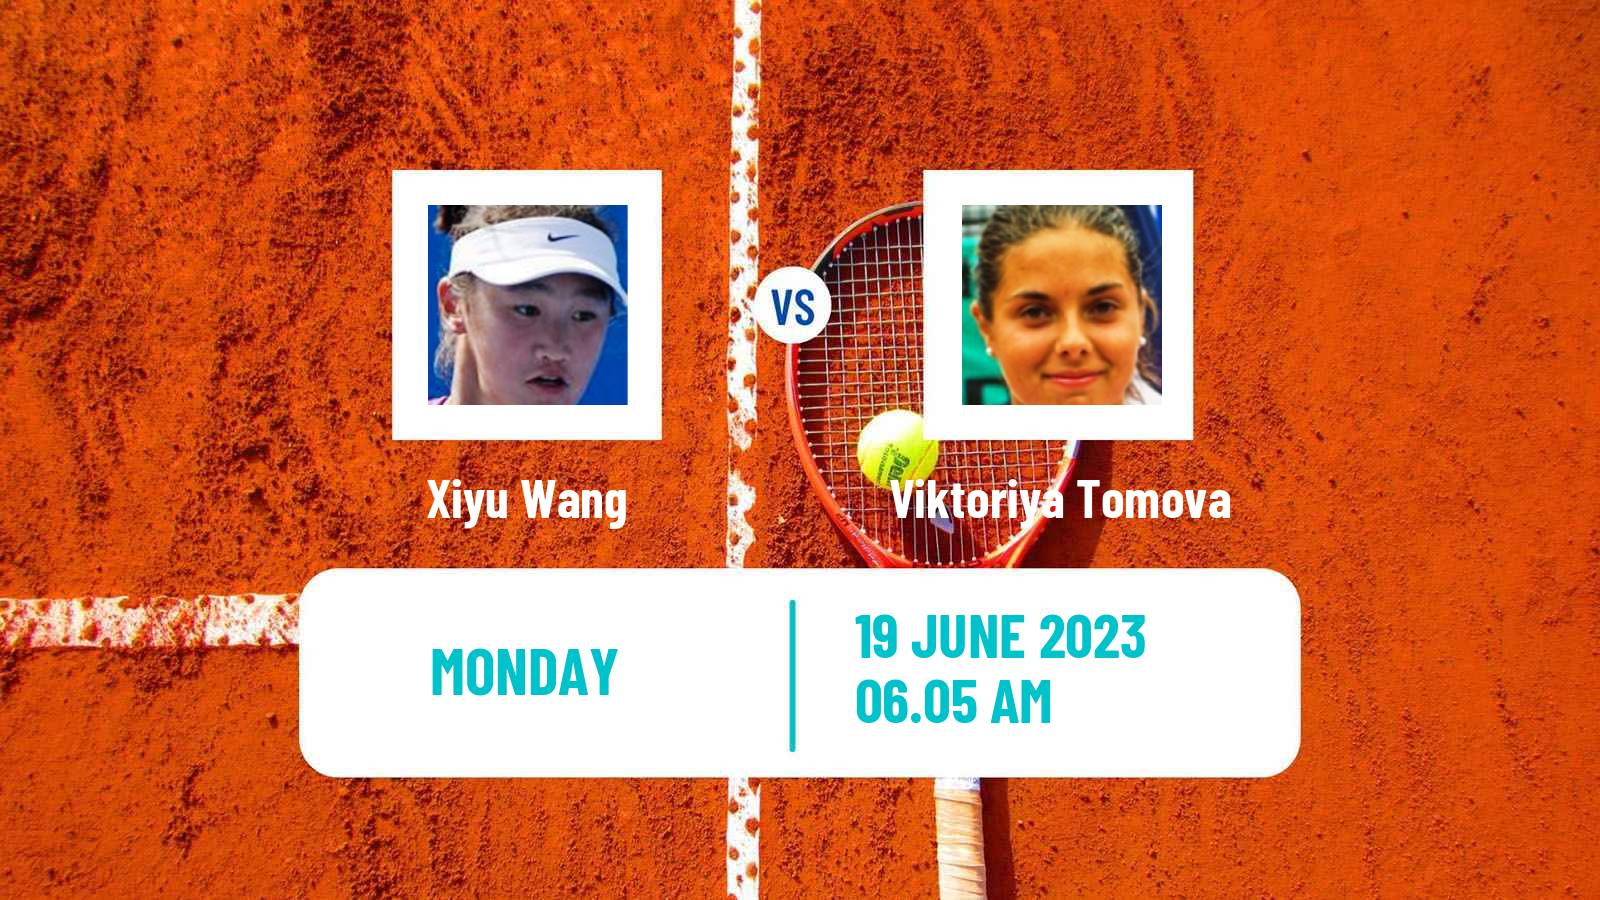 Tennis WTA Birmingham Xiyu Wang - Viktoriya Tomova